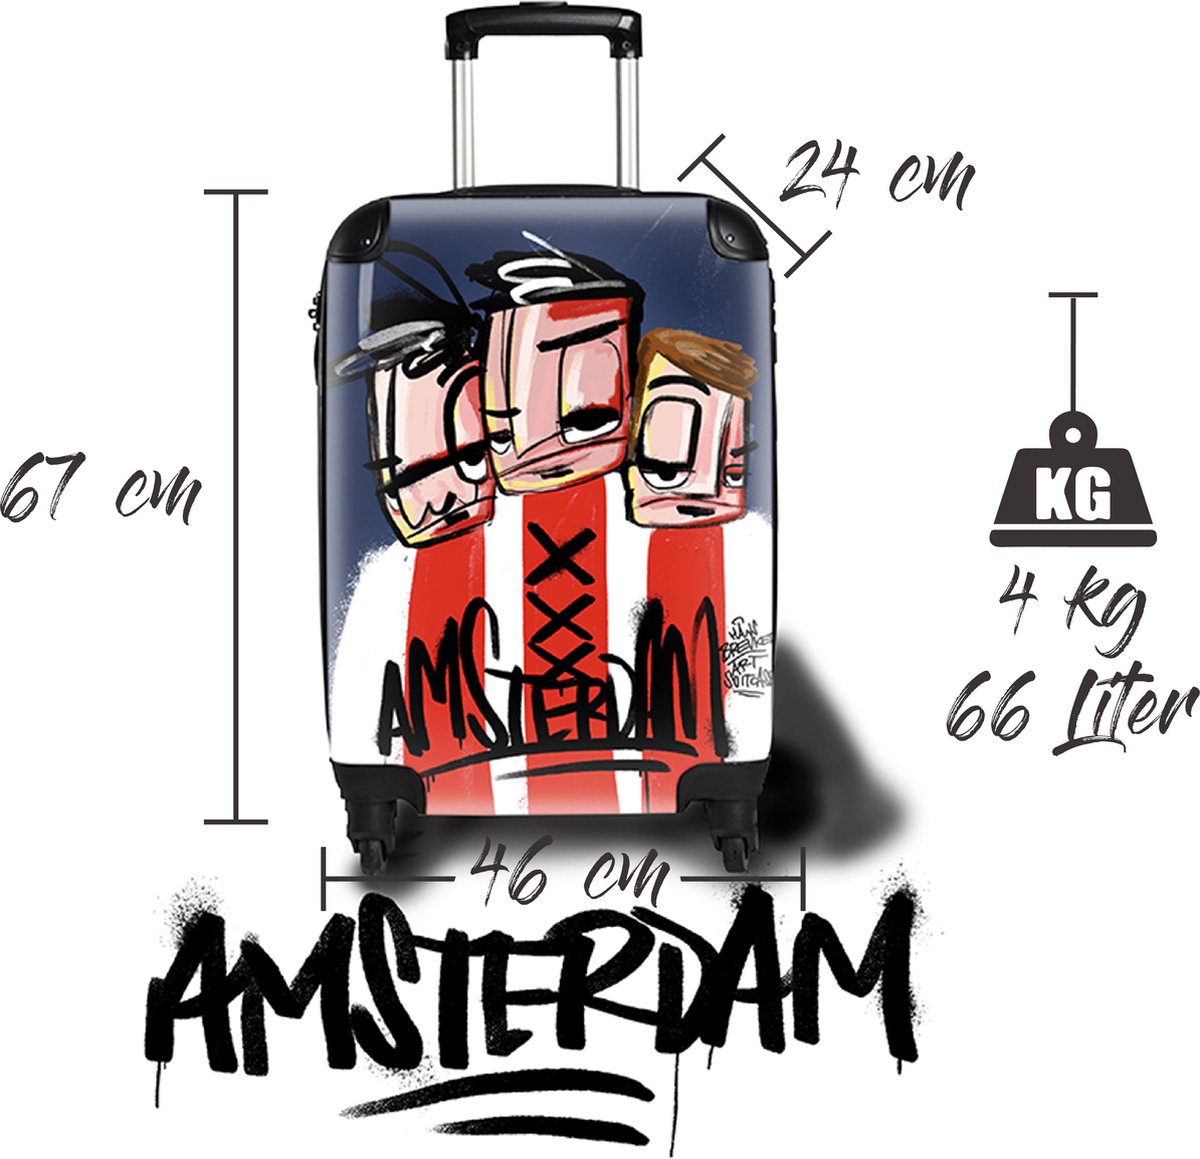 Amsterdam Ajaxart koffer. Originele HANS BREUKER™ Art Suitcase.Amsterdam! Geïnspireerd op Ajax. Reis in stijl, represent je stad met een echte Amsterdam koffer die maar weinigen hebben. Een originele manier om Ajax te supporten.